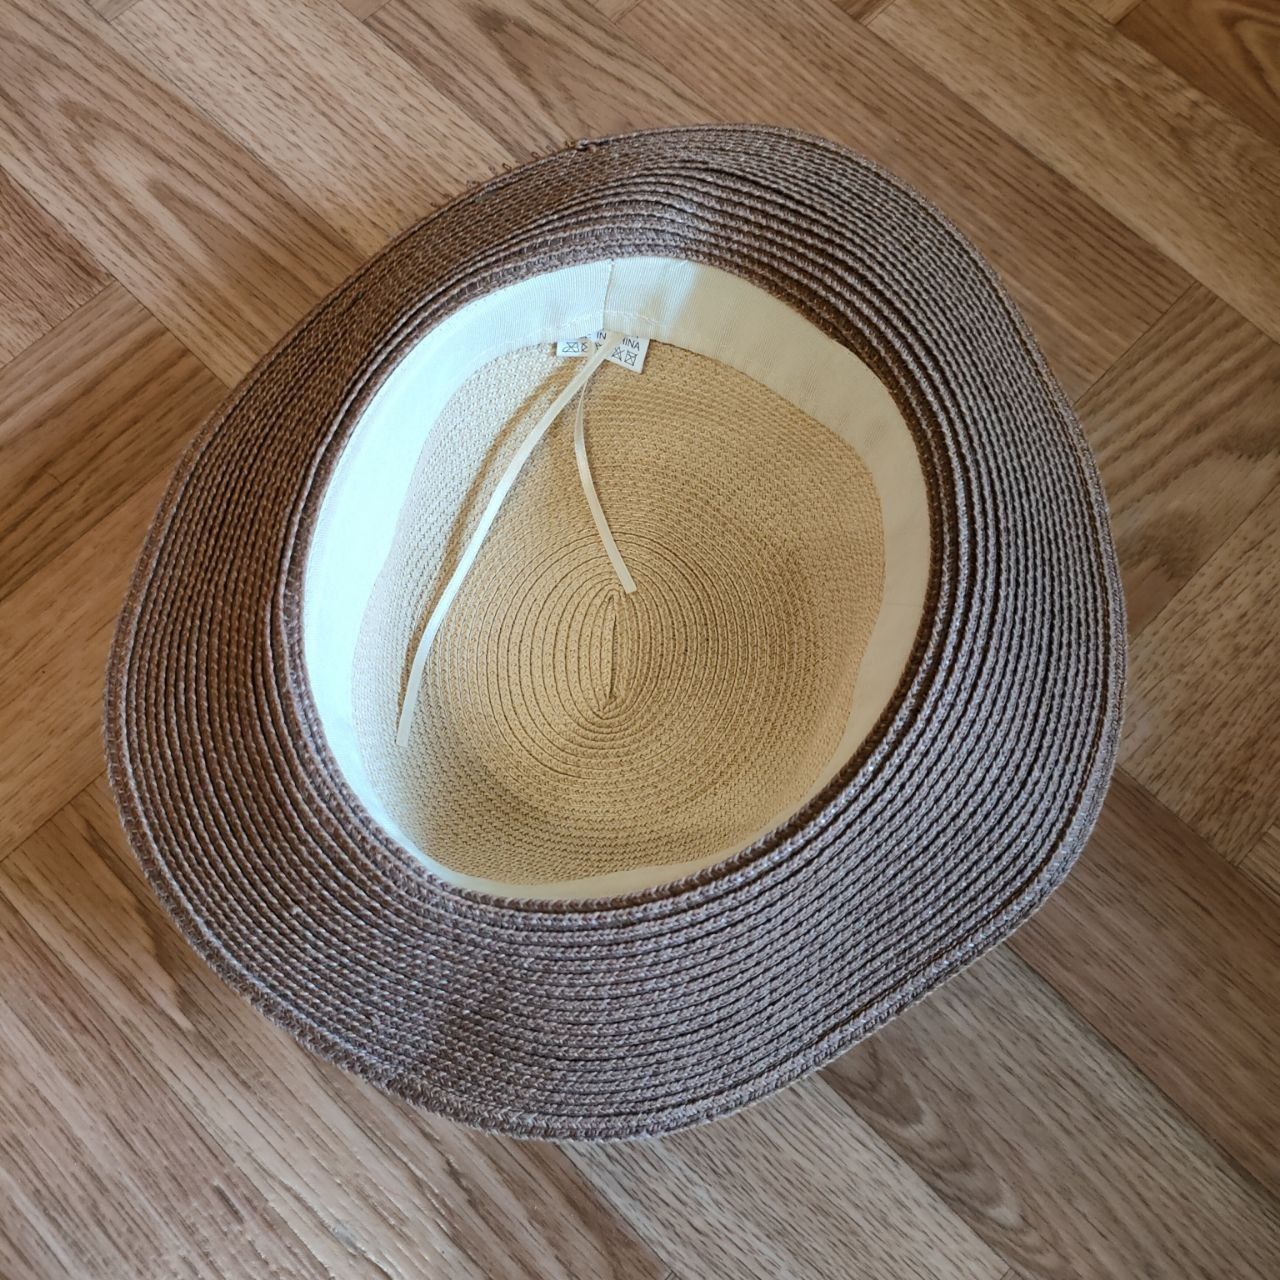 Літній капелюх/ панама з бамбукової соломи, 55см